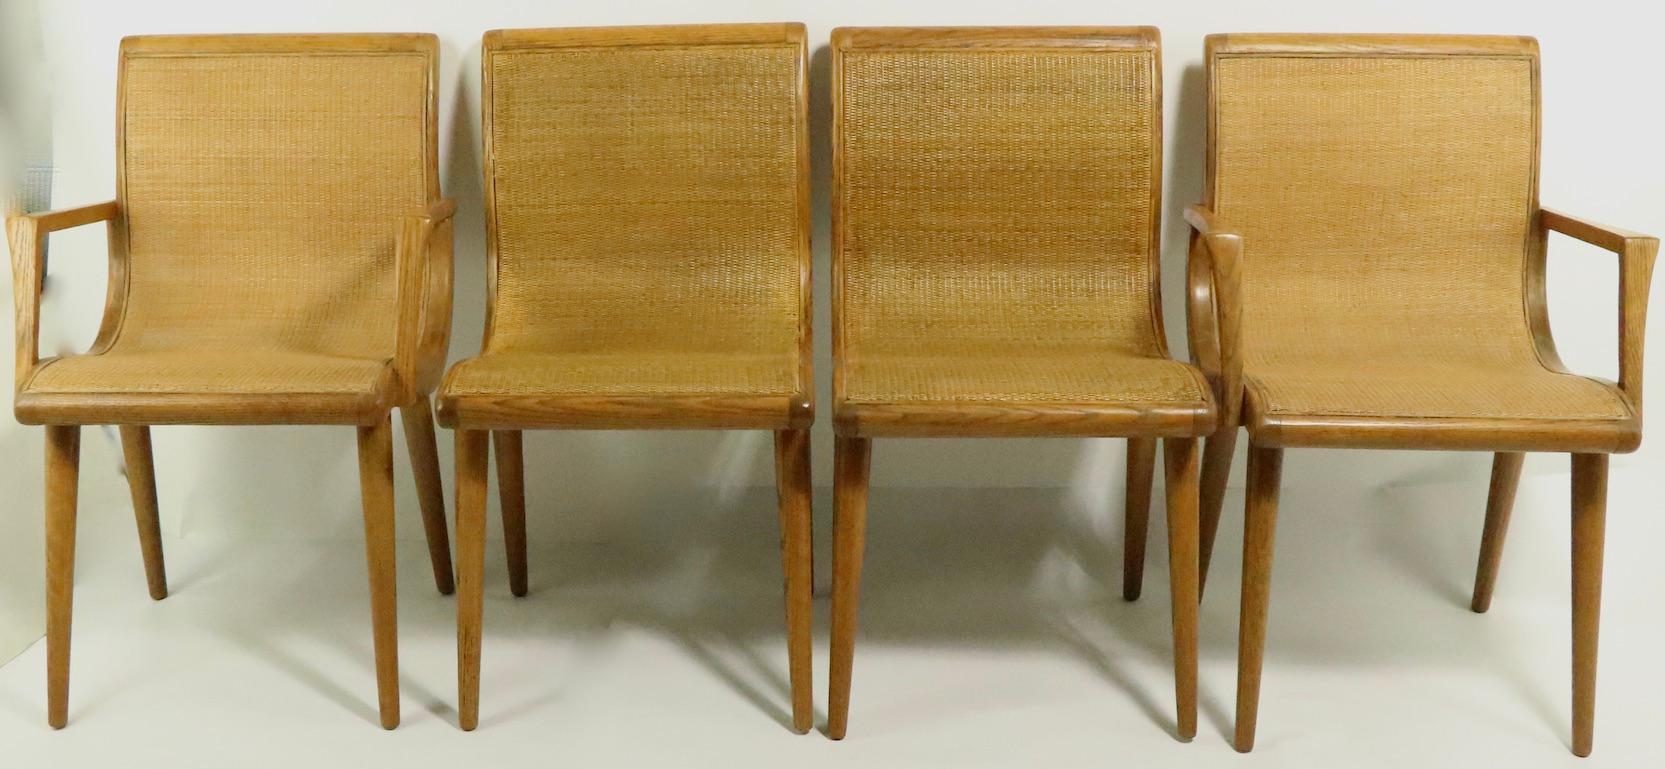 Ensemble élégant de quatre chaises de salle à manger du milieu du siècle dernier, conçu par Jack Van der Molen pour la Jamestown Lounge Company, dans le cadre de la série Classic Americana Casual. Cet ensemble comprend 2 fauteuils à bras et 2